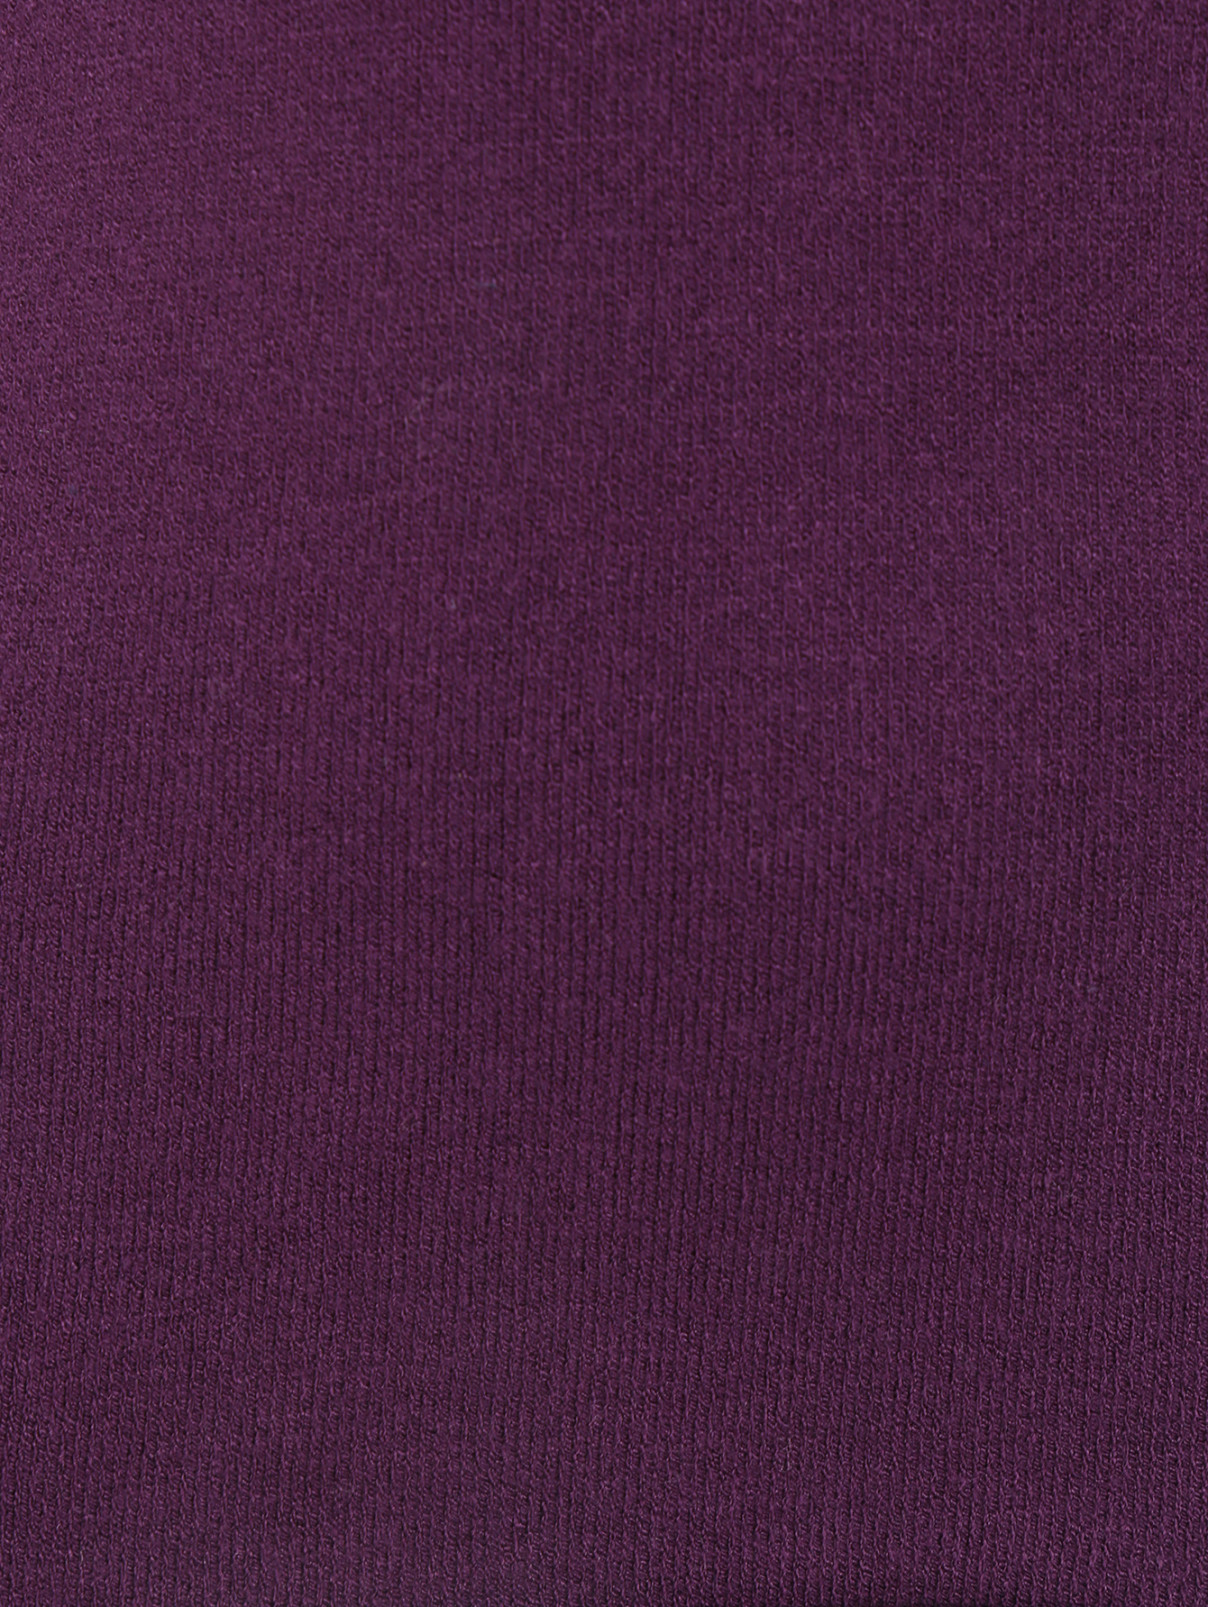 Базовая водолазка Kuxo  –  Деталь1  – Цвет:  Фиолетовый